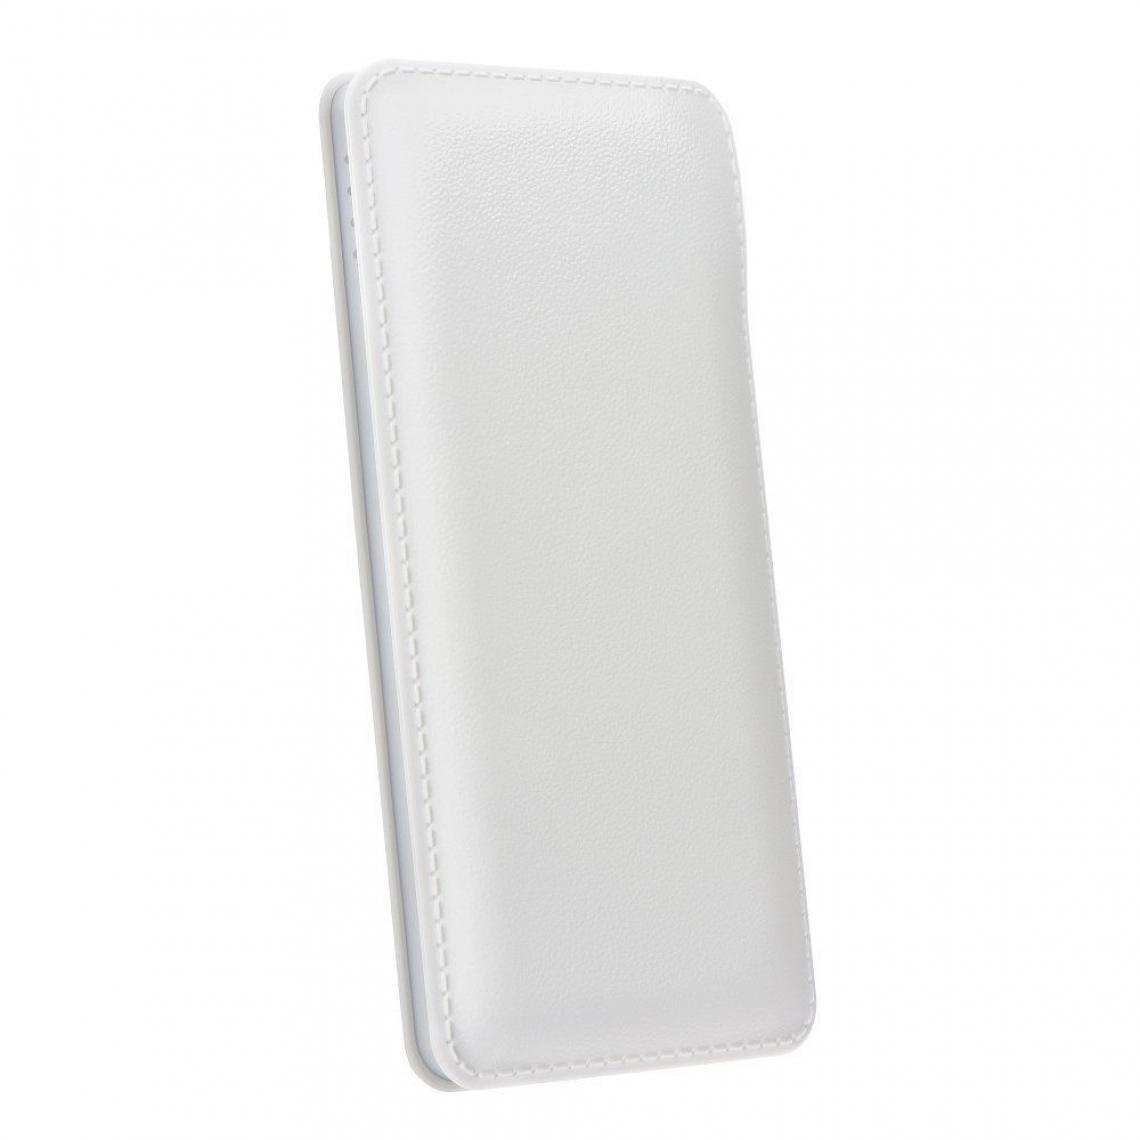 Ozzzo - Chargeur batterie externe 20000 mAh powerbank ozzzo blanc pour Xiaomi Redmi Note 3 - Autres accessoires smartphone